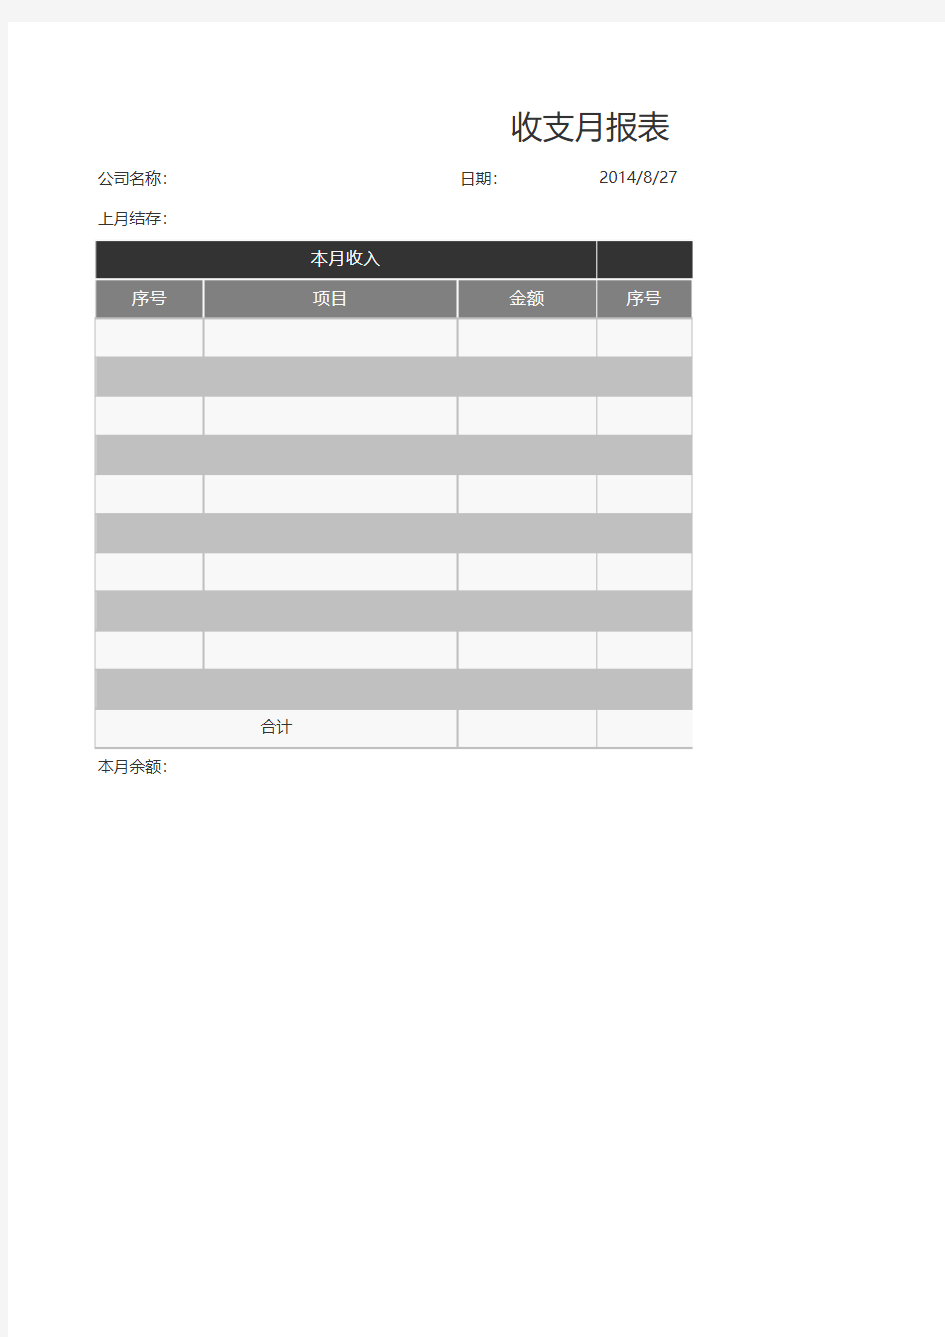 收支月报表-Excel图表模板